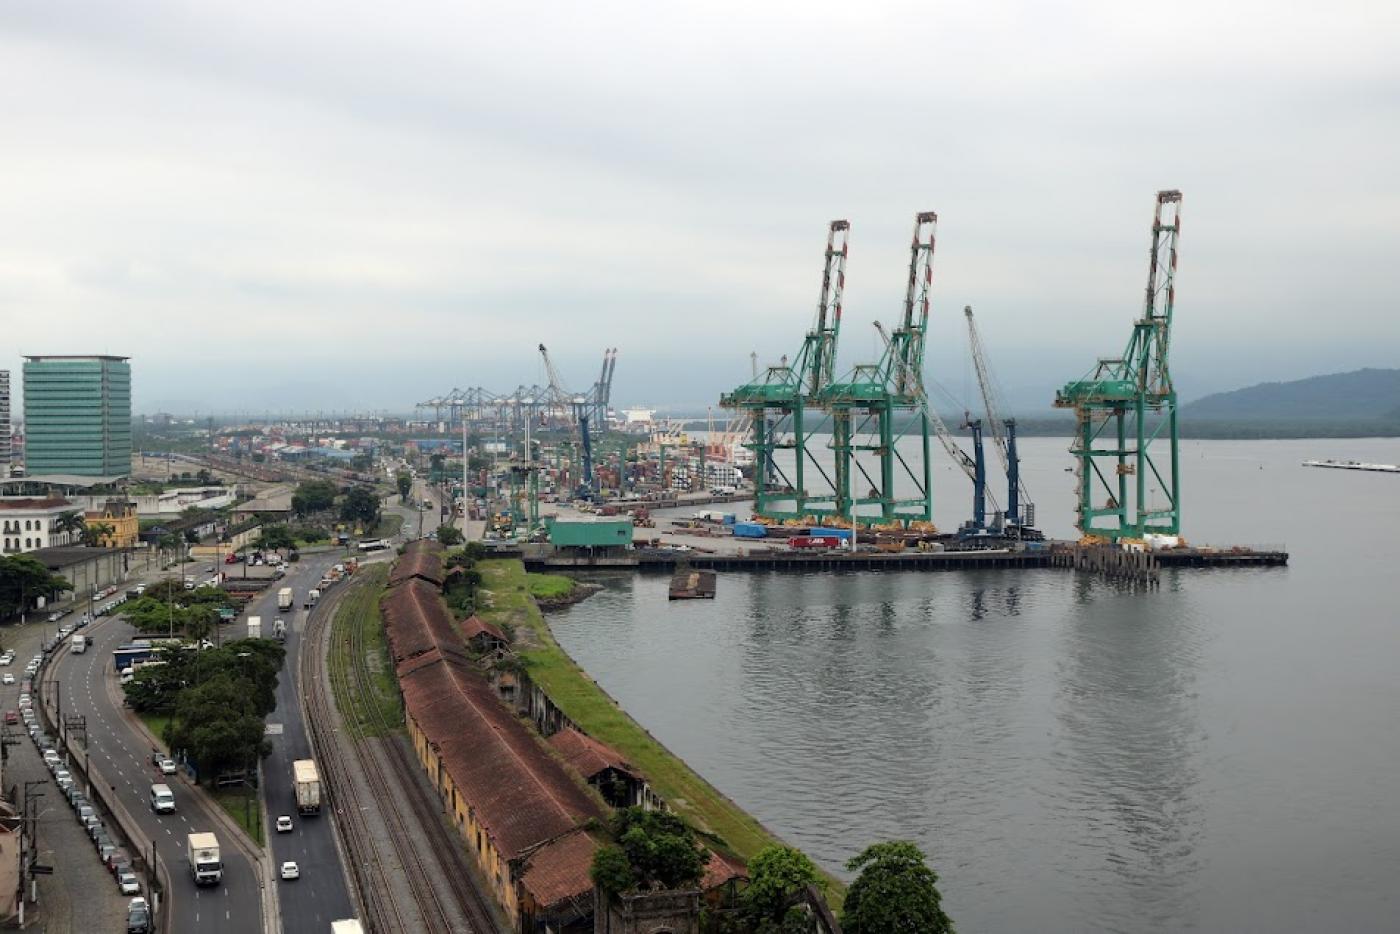 vista geral do porto, com porteineres adentrando em deck no mar, as avenidas e prédios. #paratodosverem